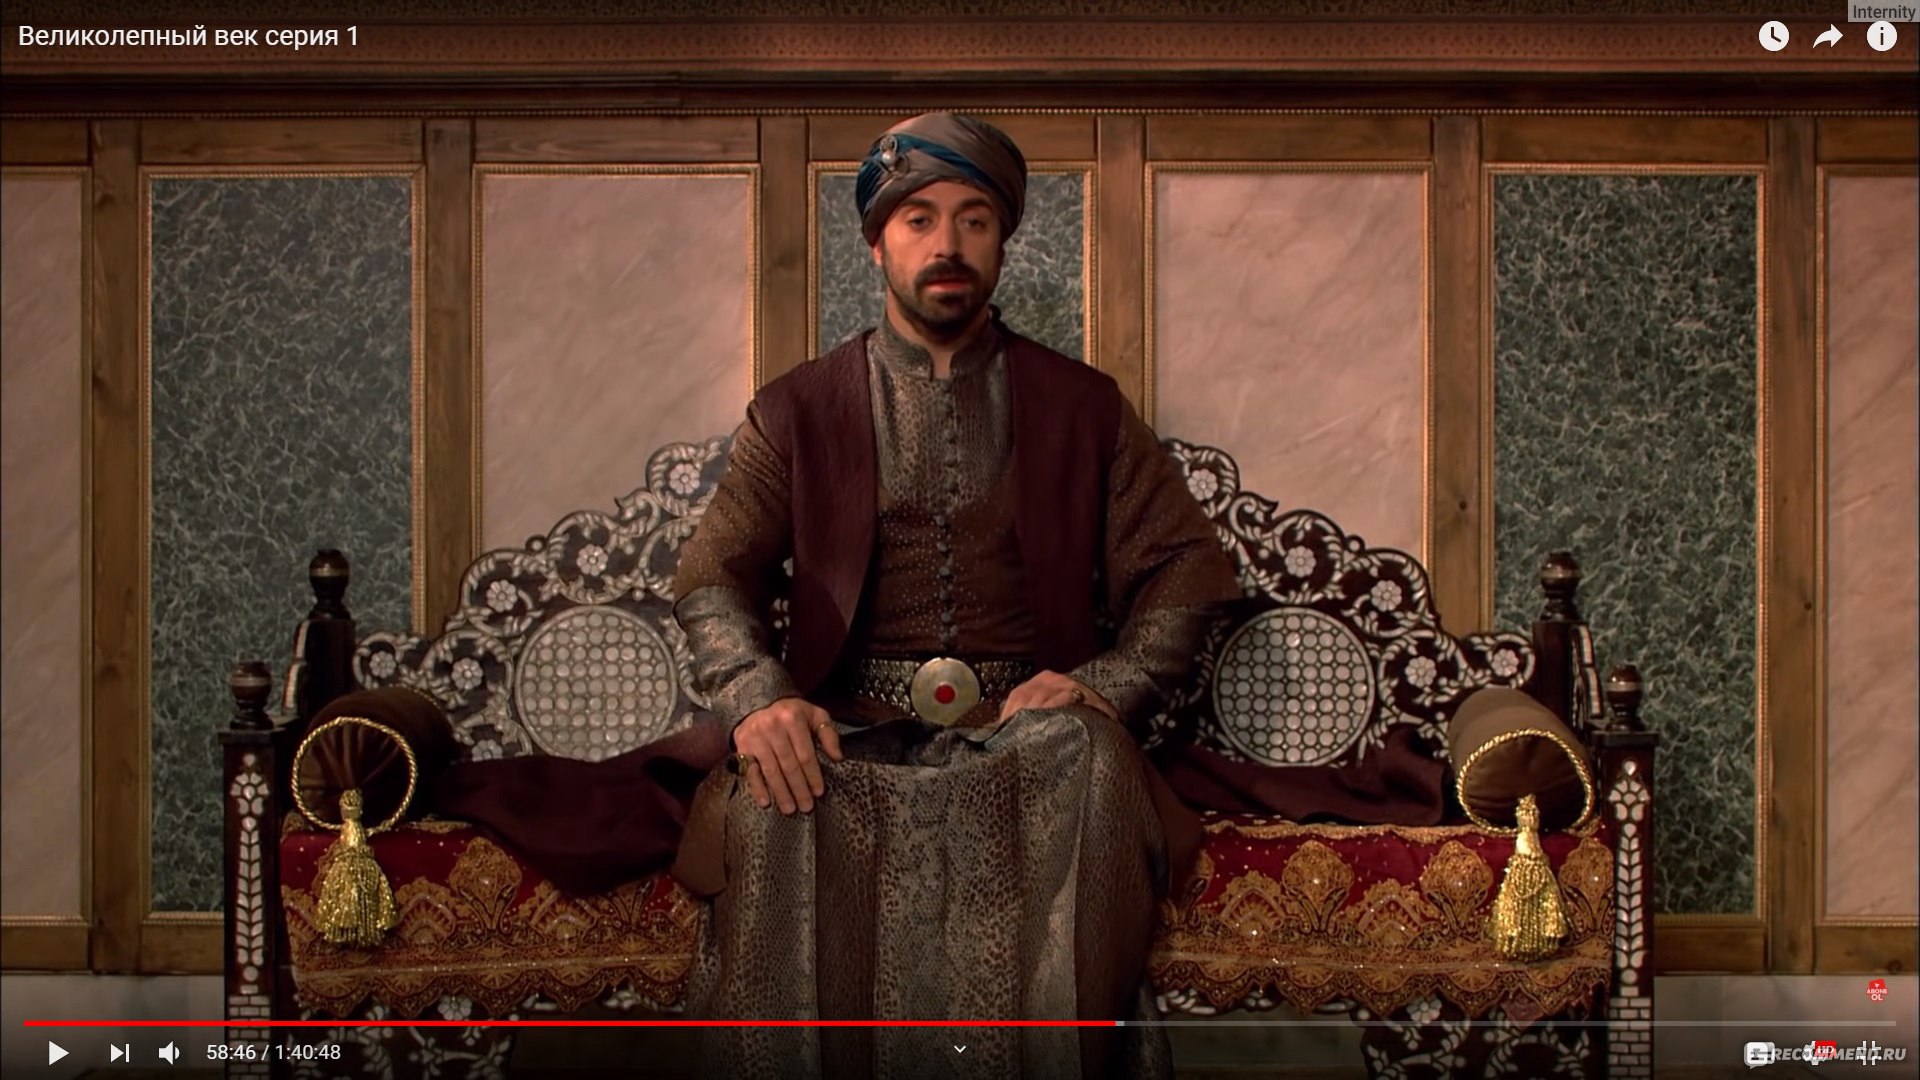 Сулейман Великолепный – великий султан Османов